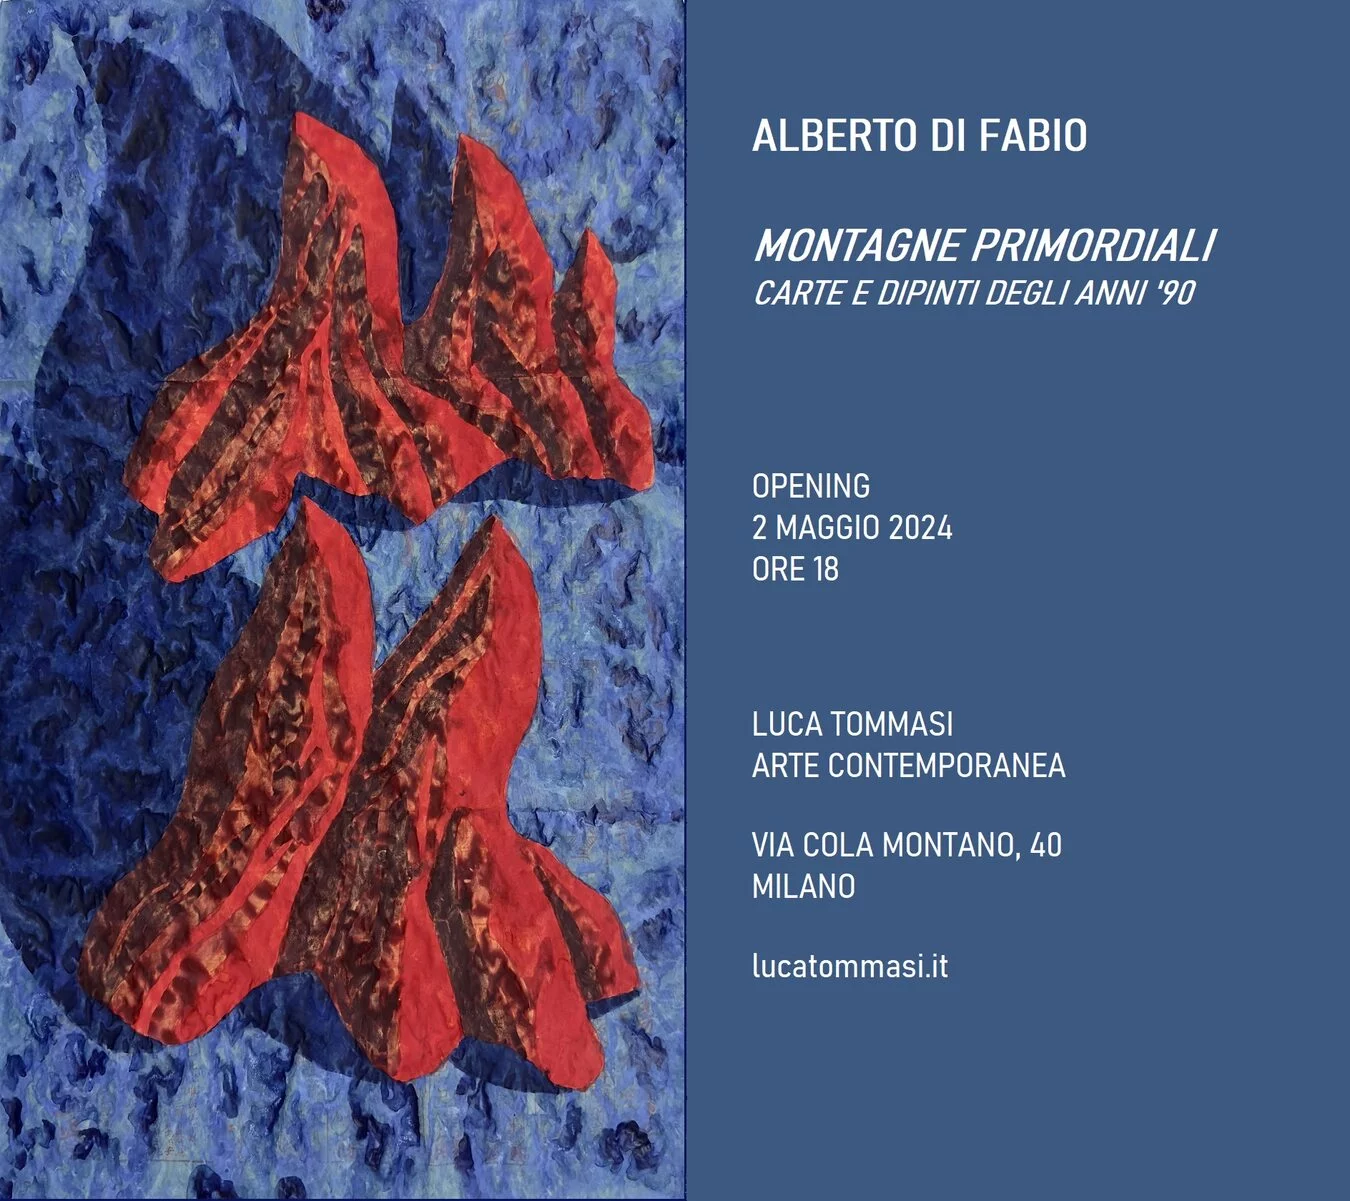 Alberto Di Fabio: Montagne primordiali, carte e dipinti degli anni 90